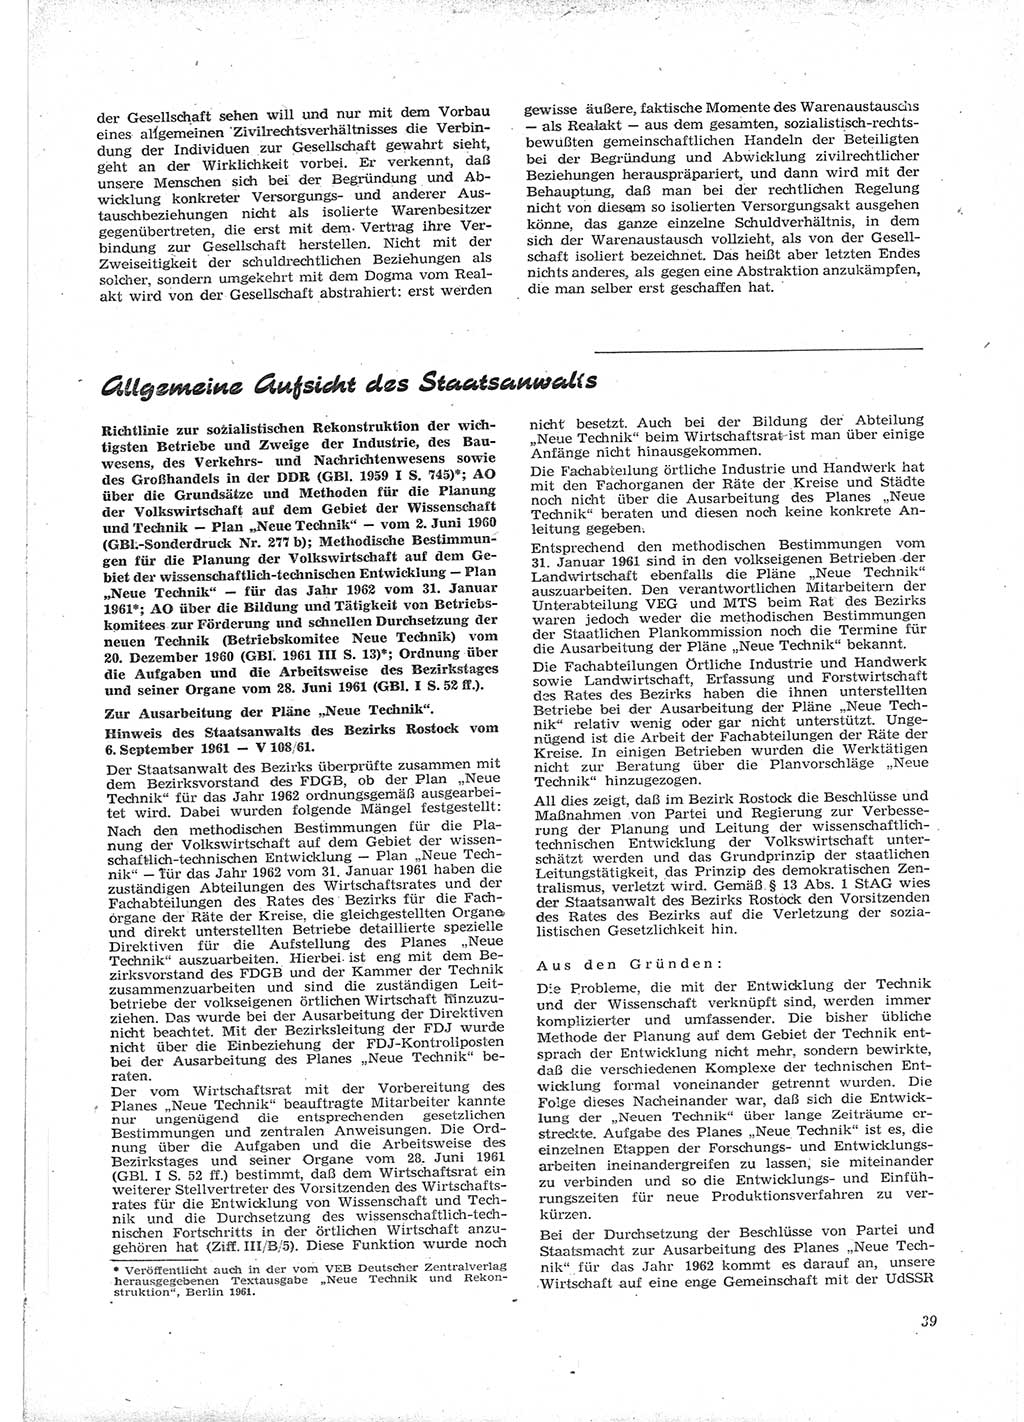 Neue Justiz (NJ), Zeitschrift für Recht und Rechtswissenschaft [Deutsche Demokratische Republik (DDR)], 16. Jahrgang 1962, Seite 39 (NJ DDR 1962, S. 39)